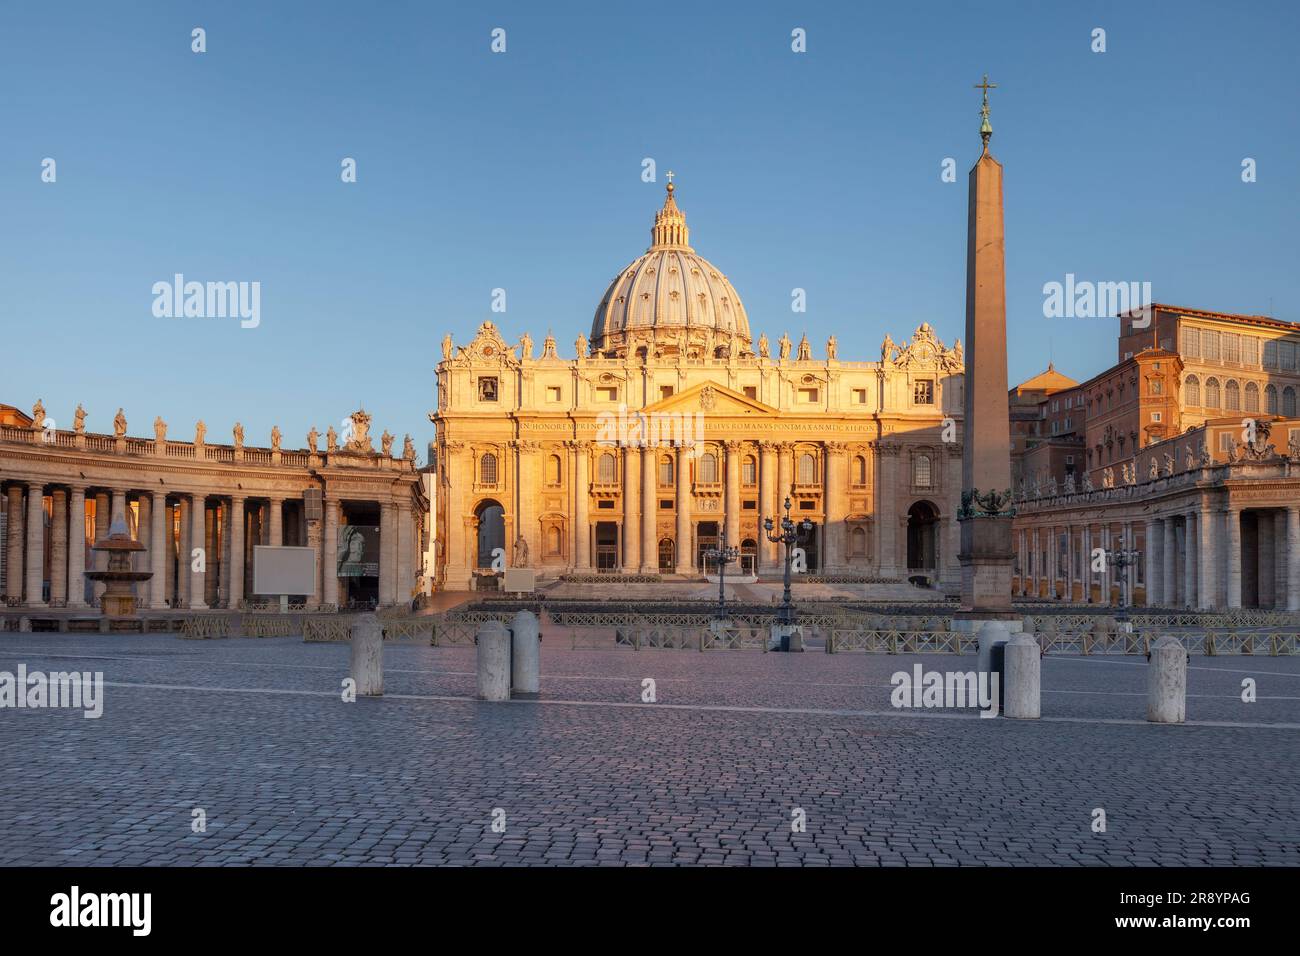 Am frühen Morgen auf der Piazza San Pietro, Vatikanstadt, Rom, Italien Stockfoto